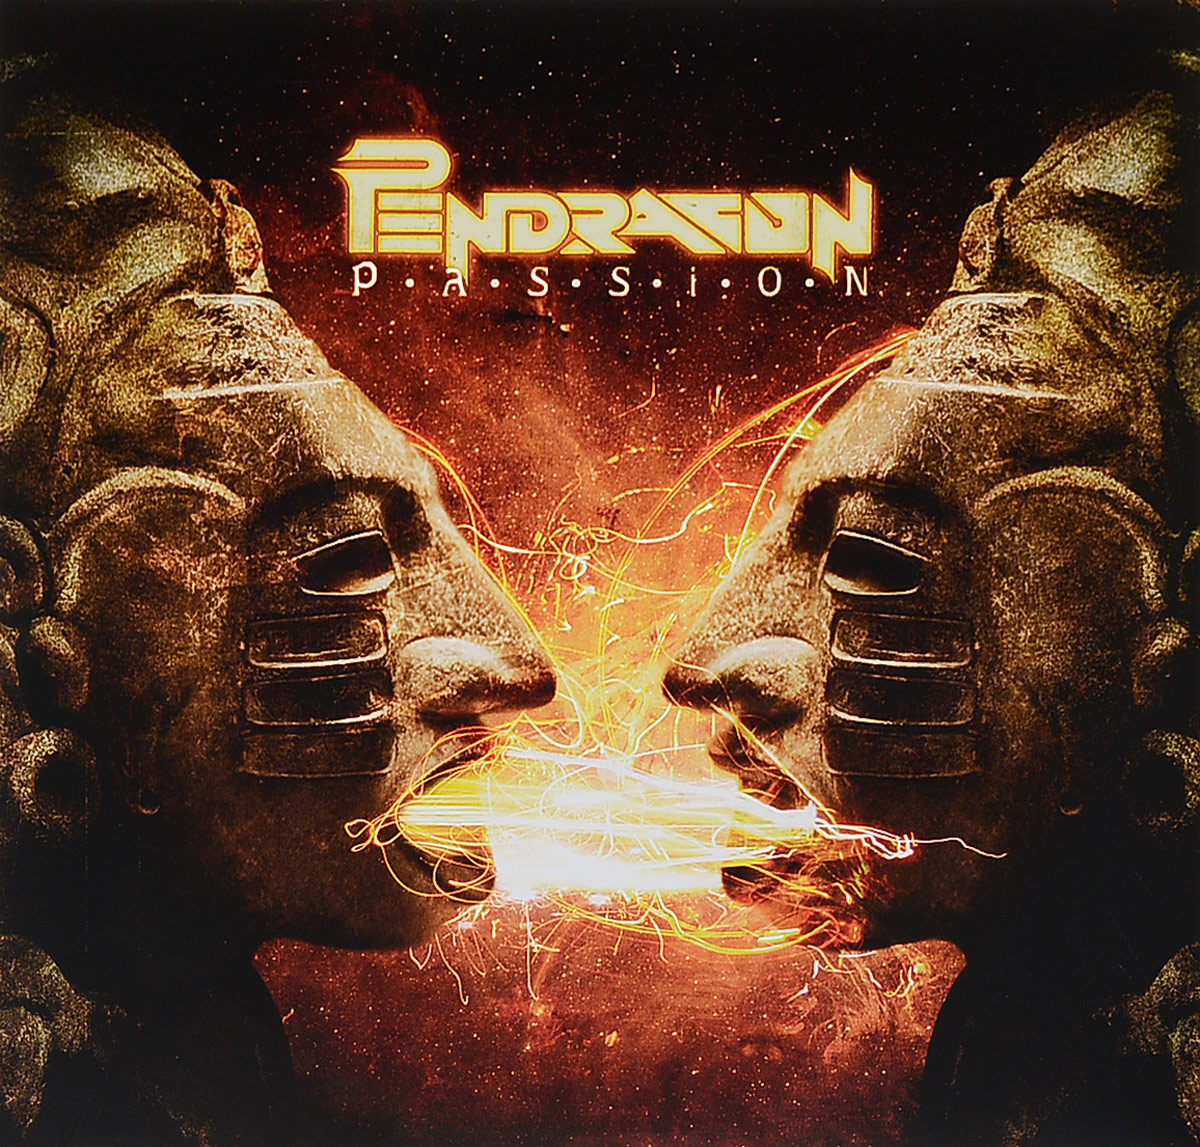 Pendragon. Passion (2 LP)